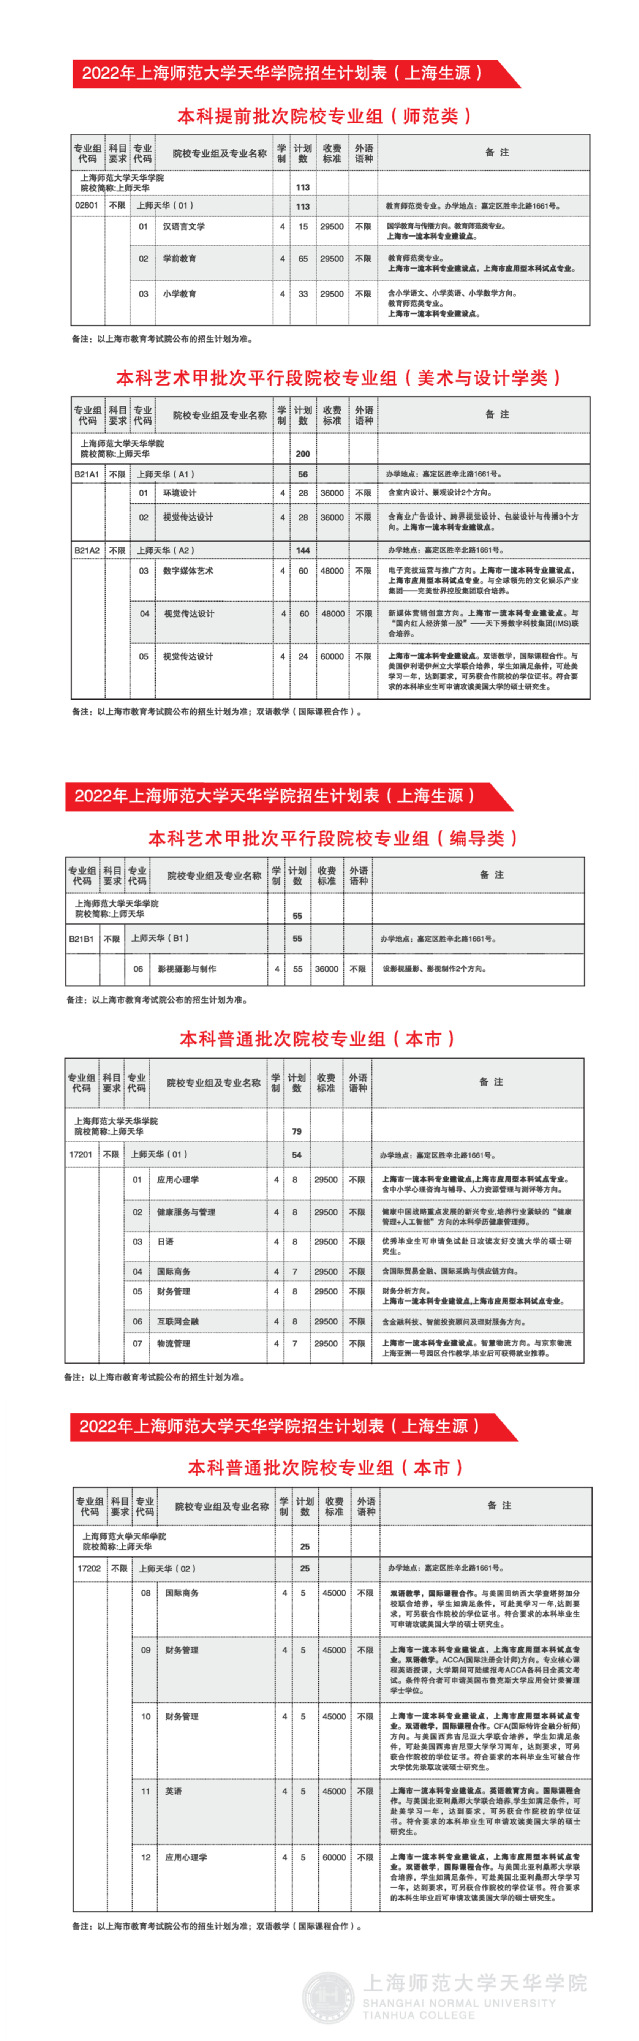 上师大天华学院2022年招生计划表（上海生源）